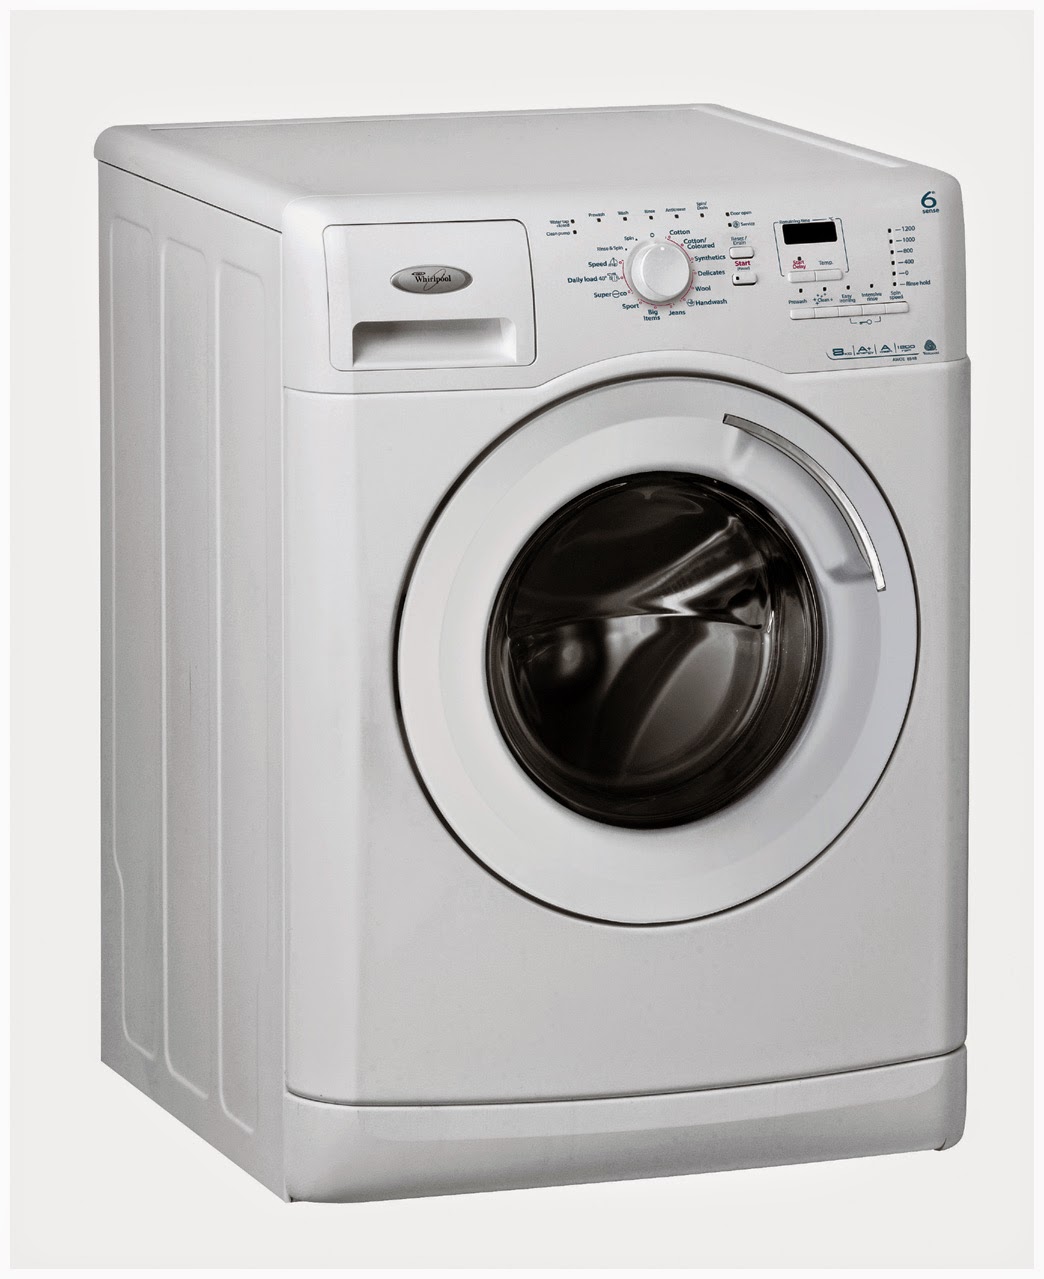 Randu Laundry Membersihkan Merawat Mesin Cuci Front 